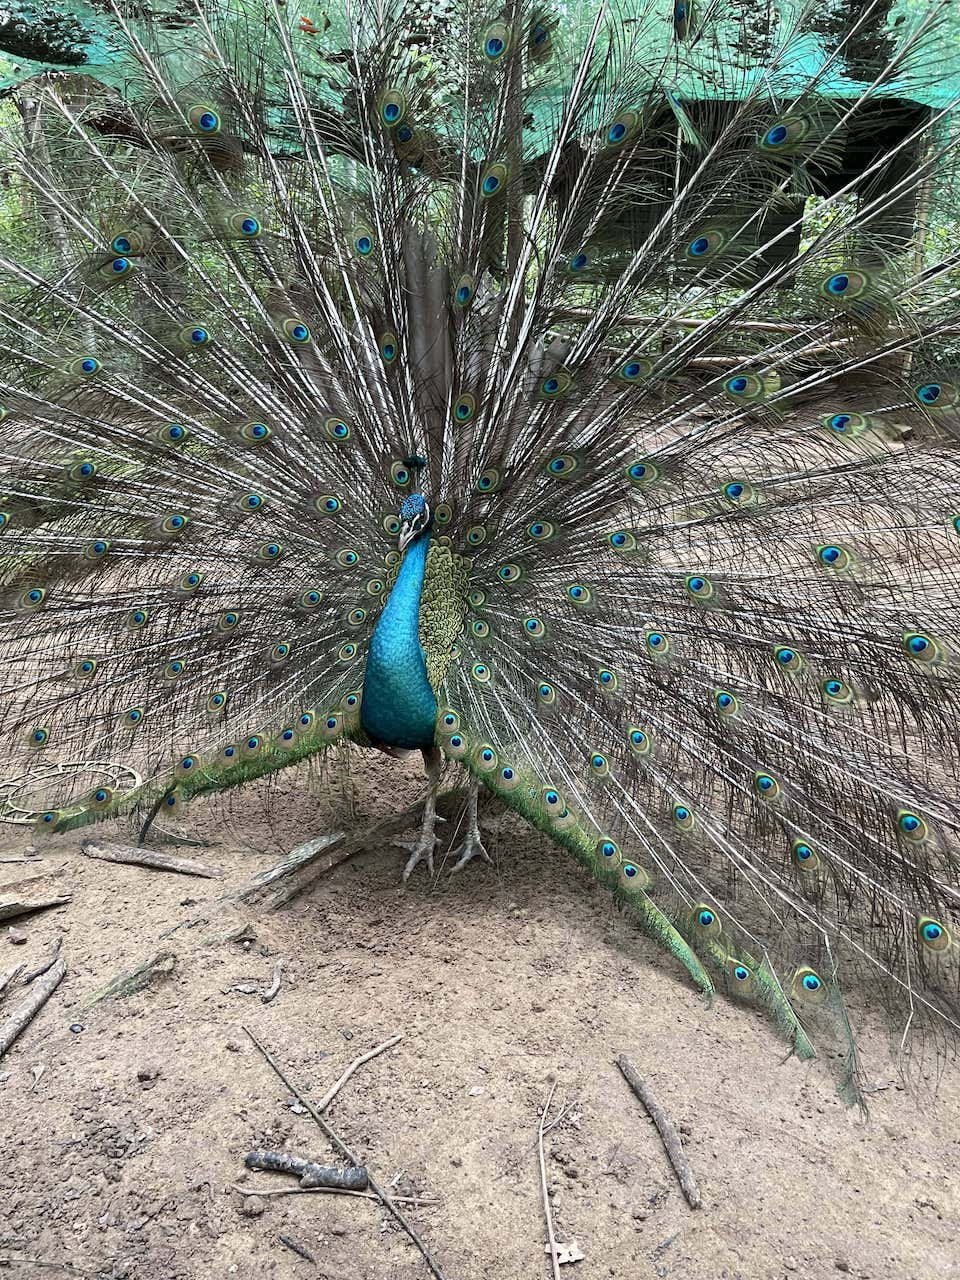 Peacock in Botanic Garden